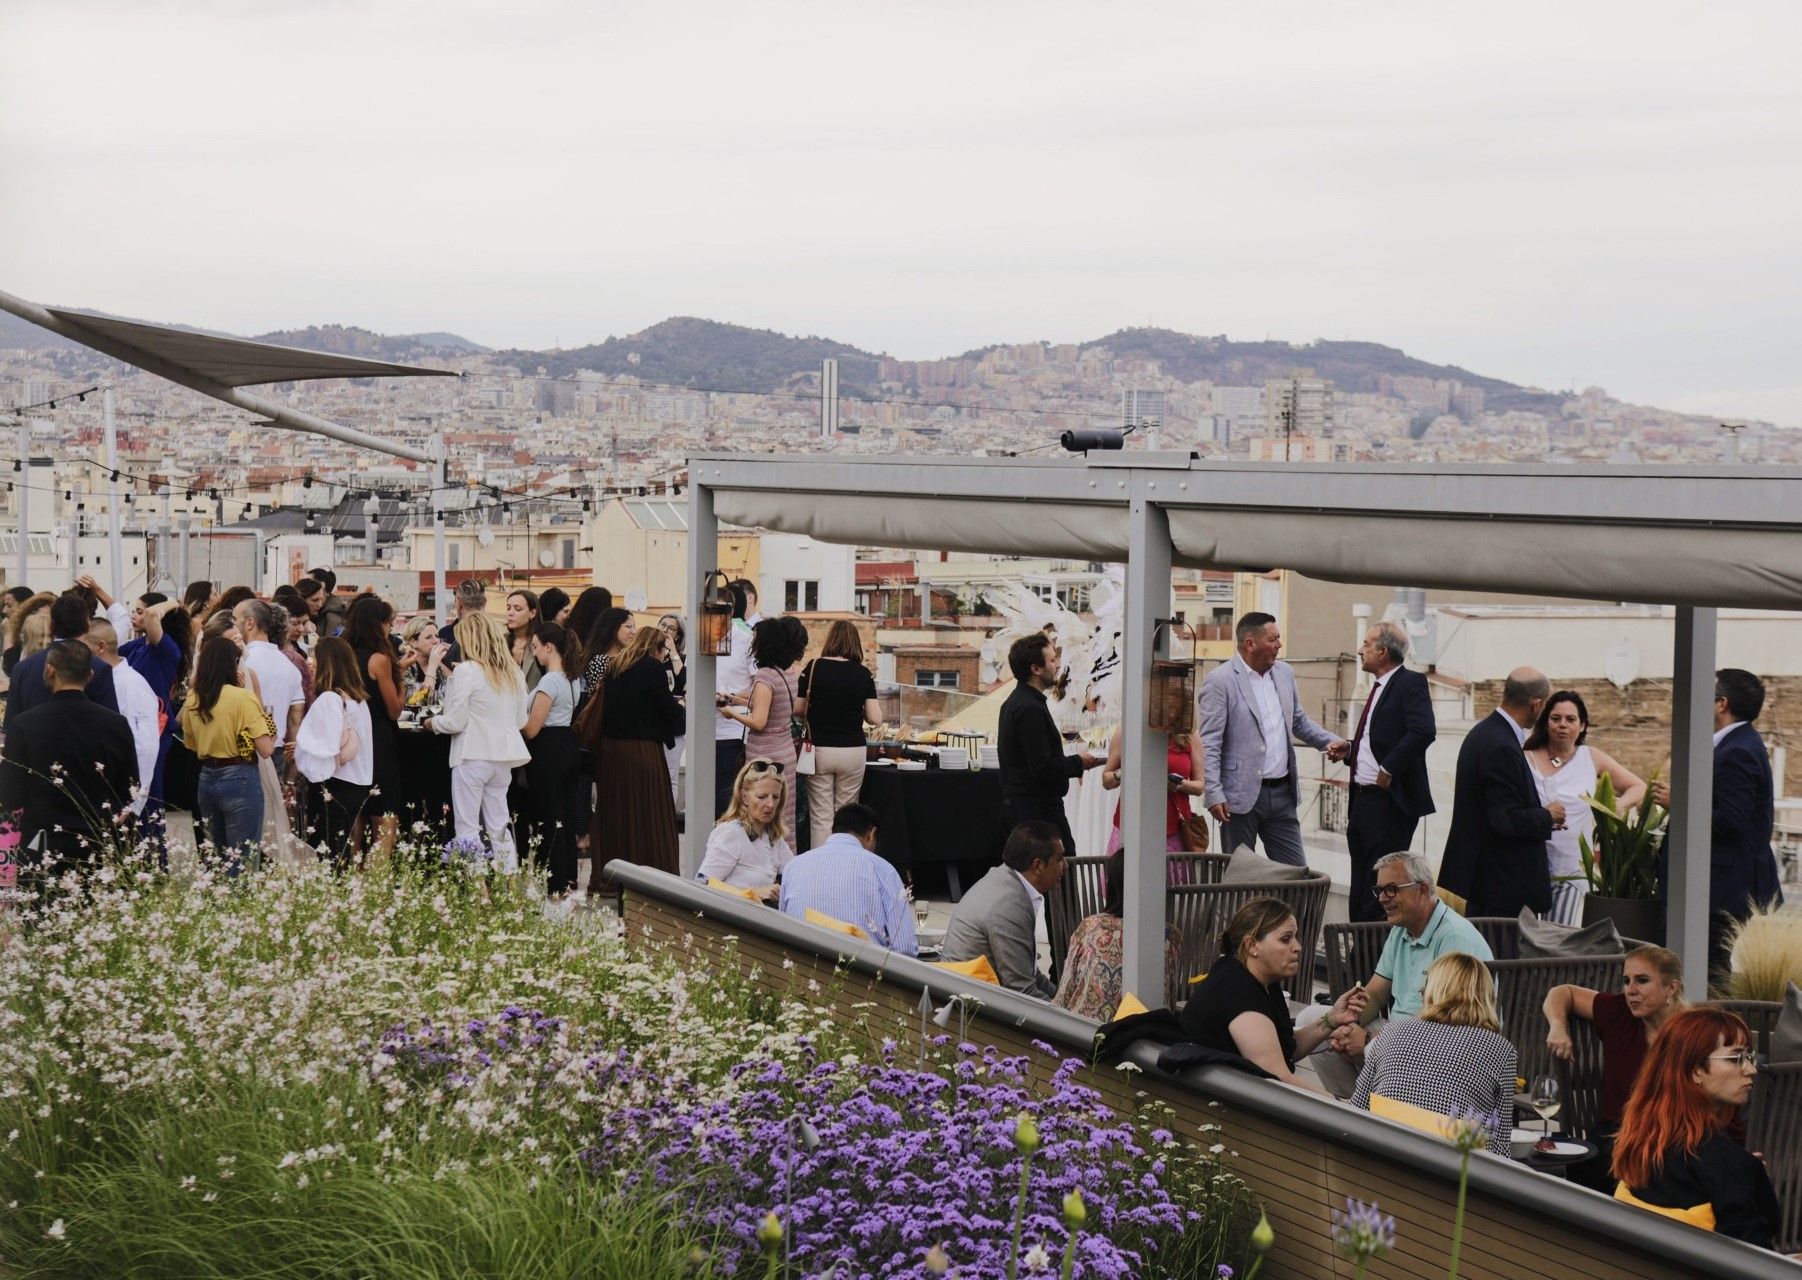 InterContinental Barcelona reúne a más de 250 invitados en la Fallin’ Angels Party, su primera gran fiesta